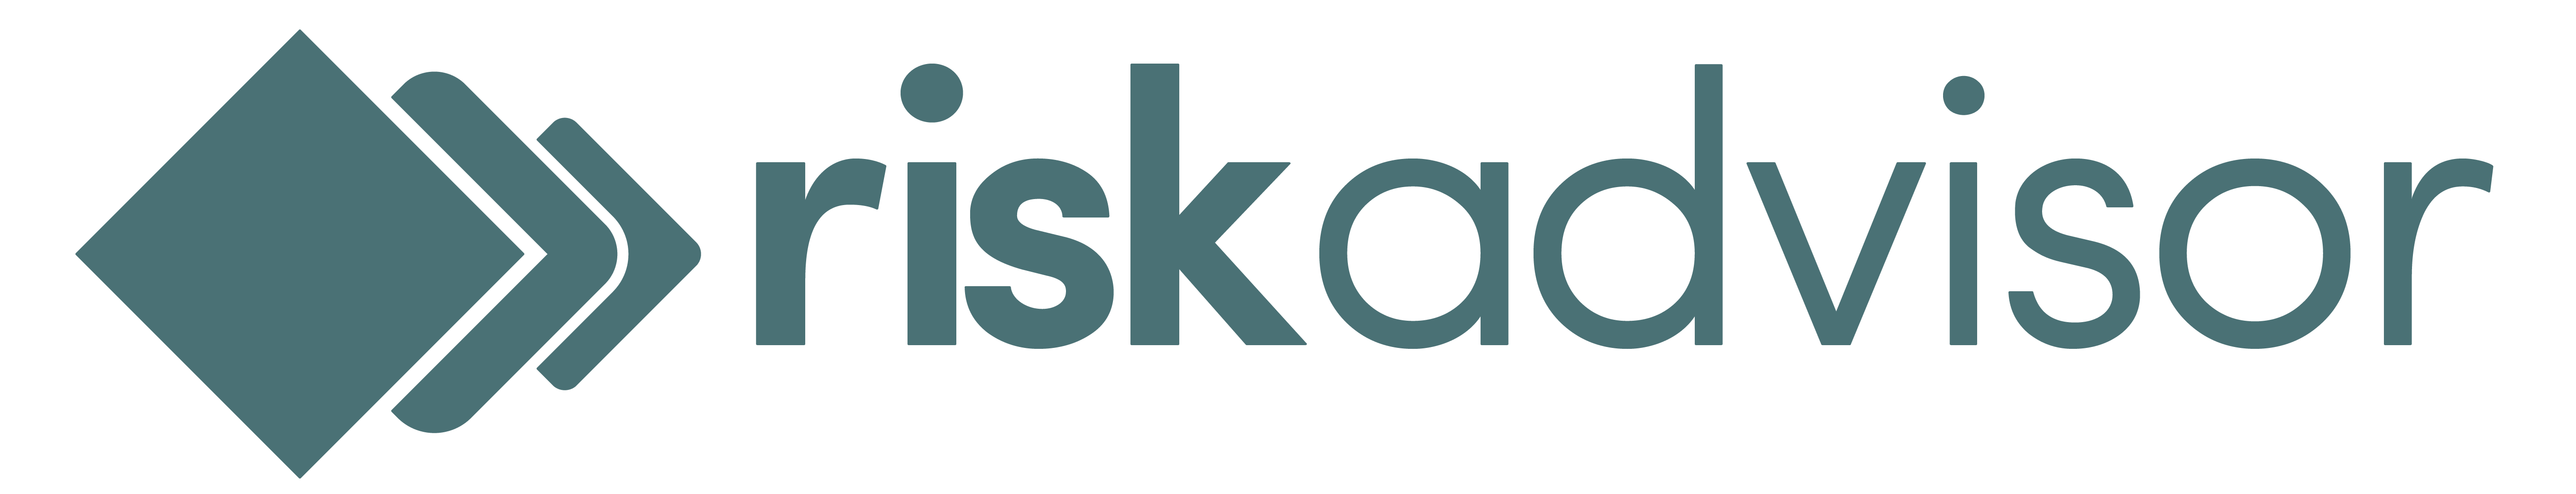 risk advisor logo teal